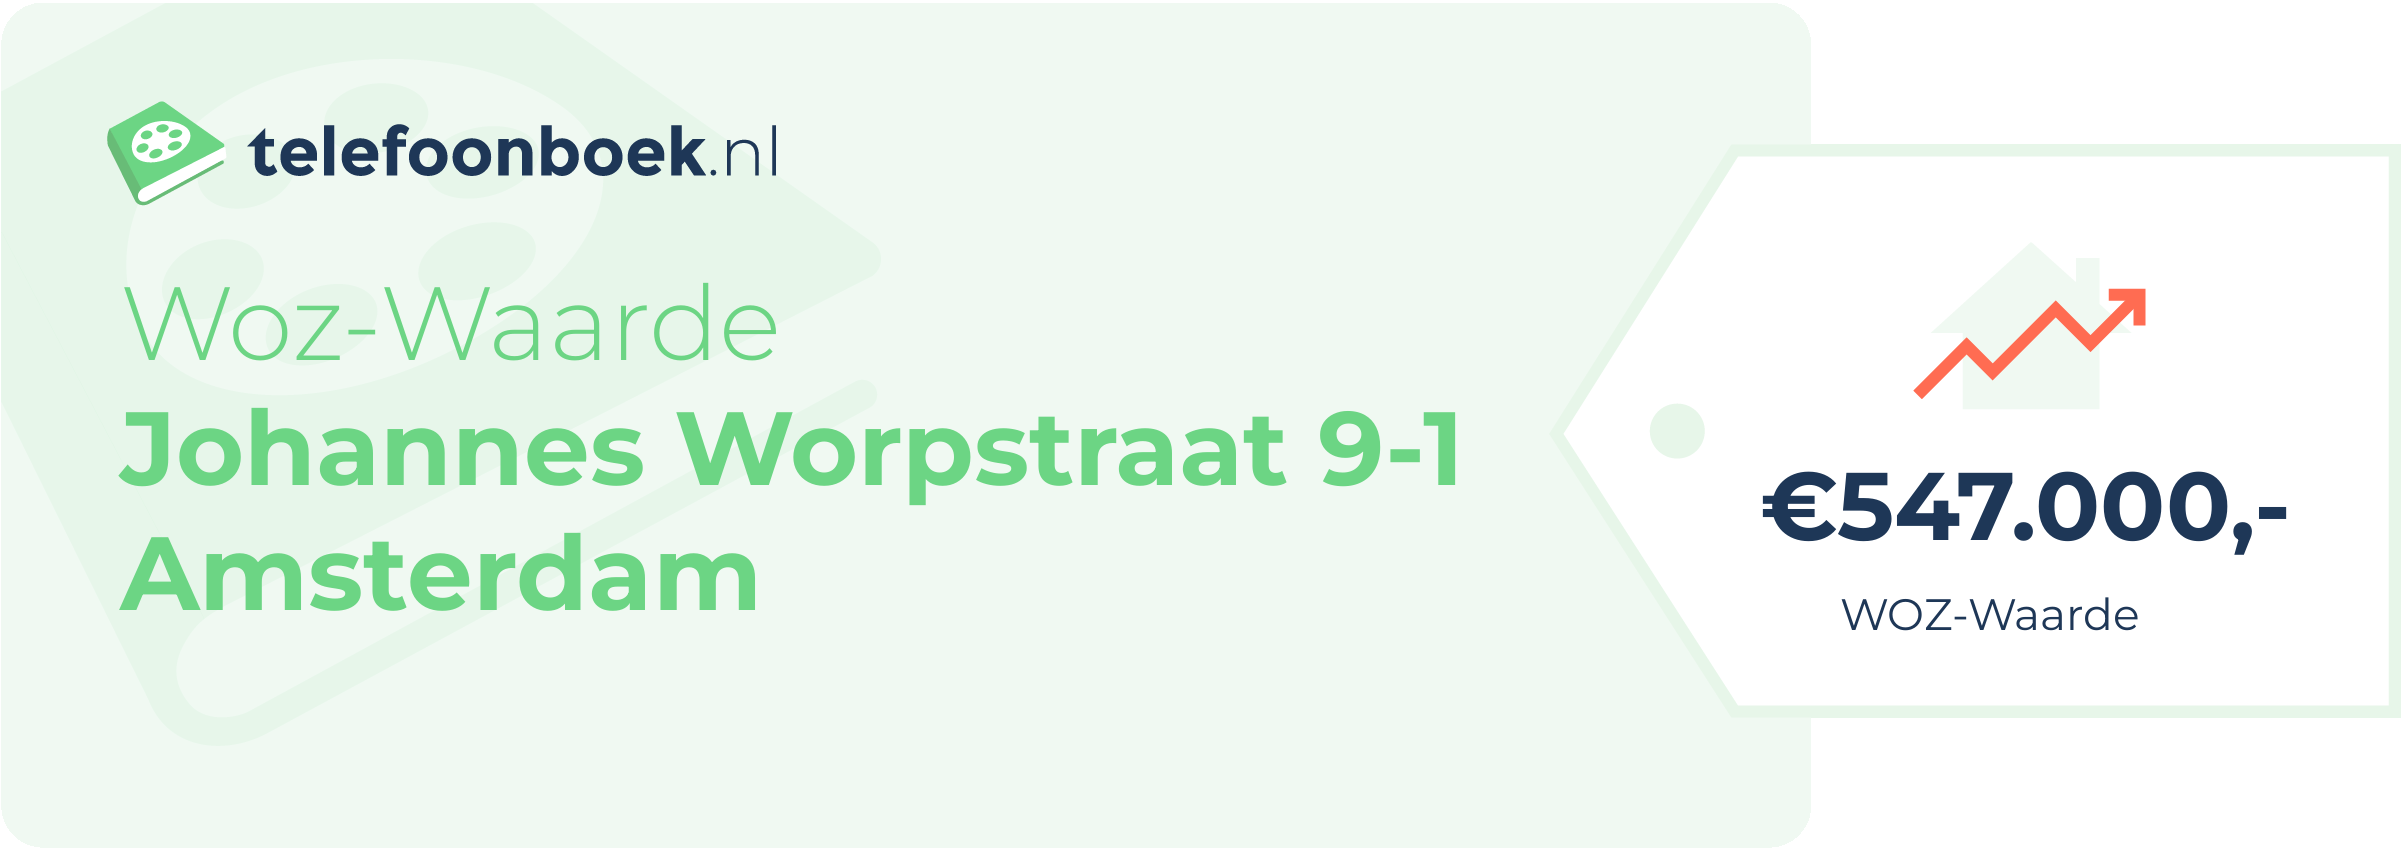 WOZ-waarde Johannes Worpstraat 9-1 Amsterdam